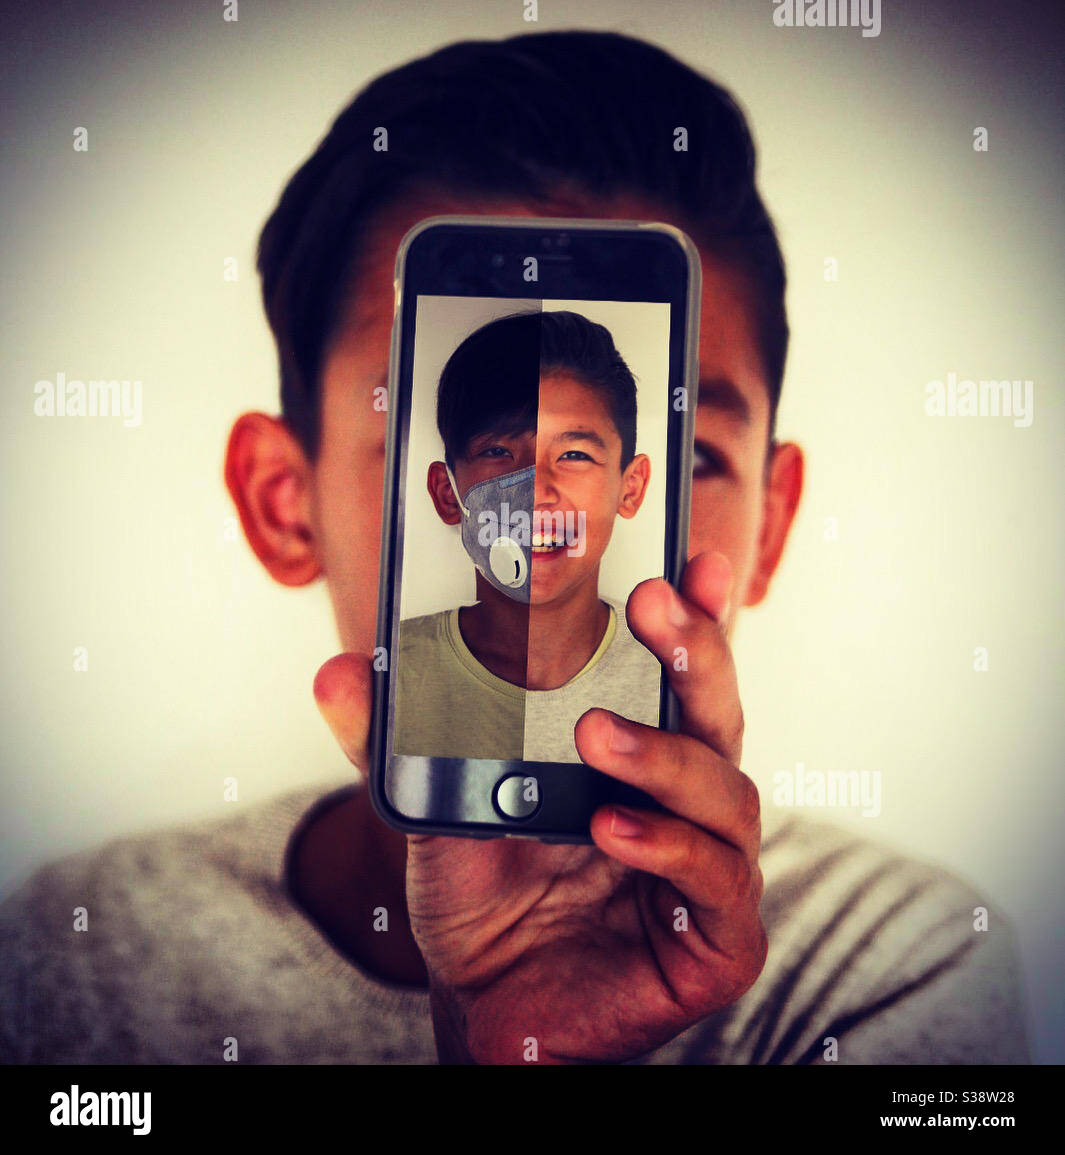 Durante el covid-19, un joven asiático creativo lleva una mitad de cara en la pantalla de su smartphone Foto de stock